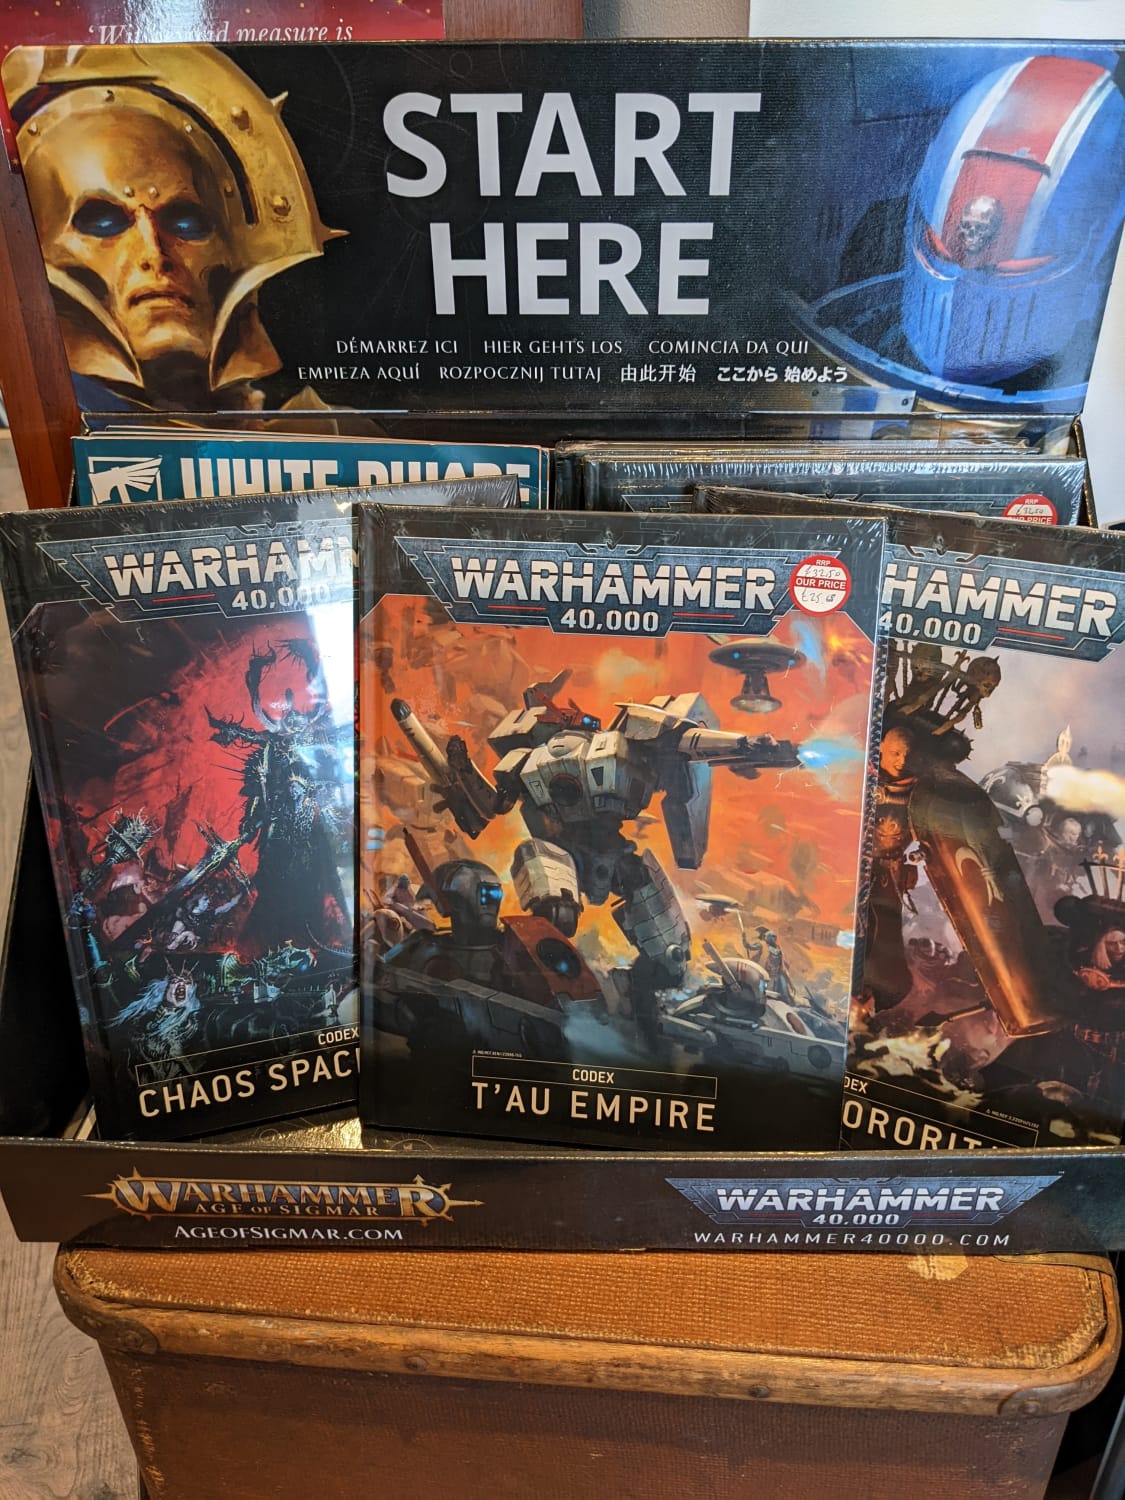 Warhammer - Codex’s